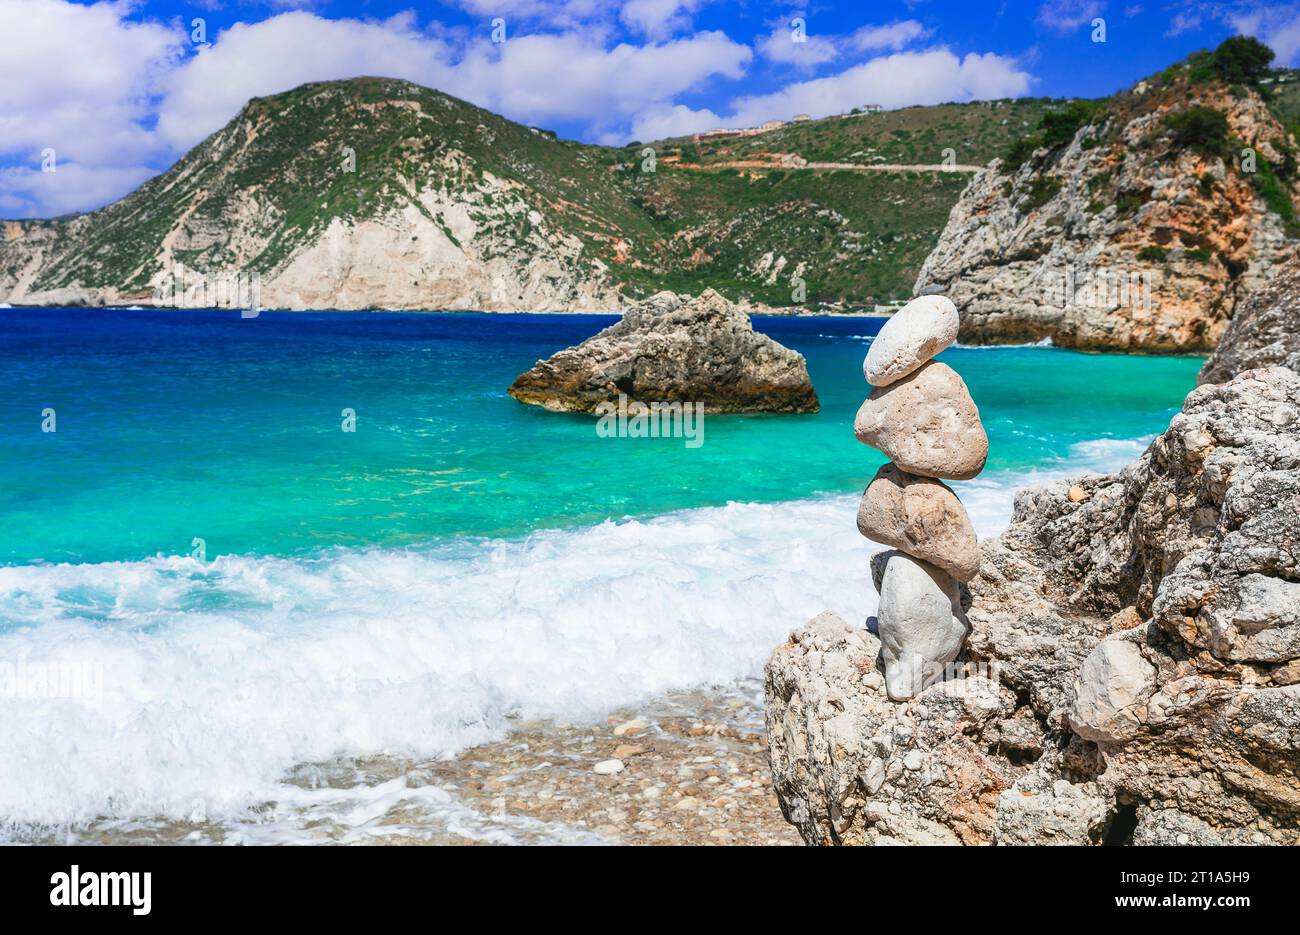 Malerische Strände der wunderschönen Insel Kephalonia (Kefalonia) - Agia Eleni mit malerischen Felsen und Steinpiramiden. Griechenland , Ionische Inseln Stockfoto